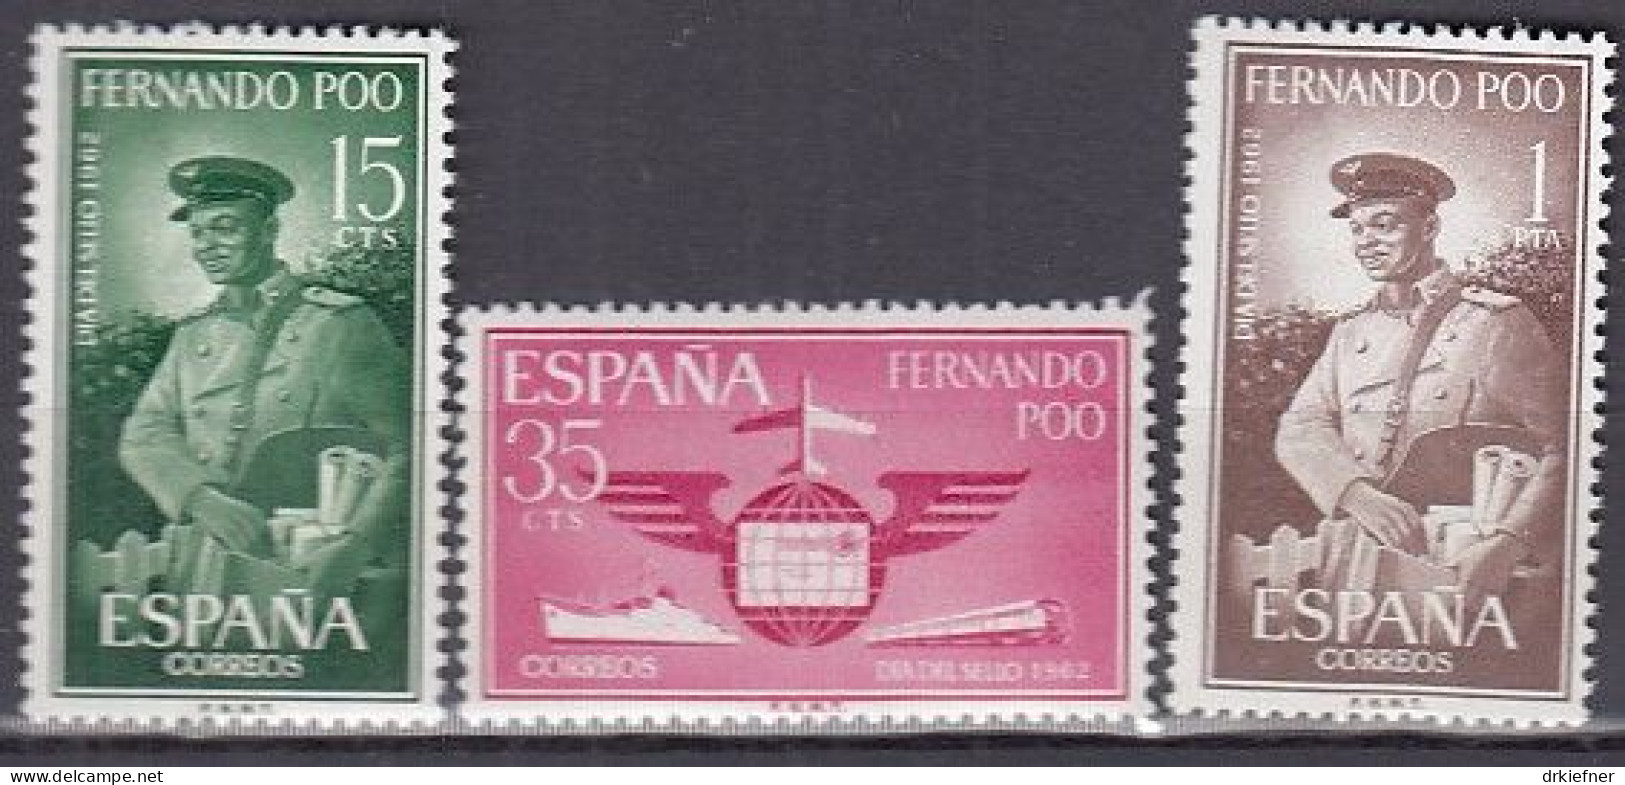 FERNANDO POO  206-208, Postfrisch **, Tag Der Briefmarke, 1962 - Fernando Poo